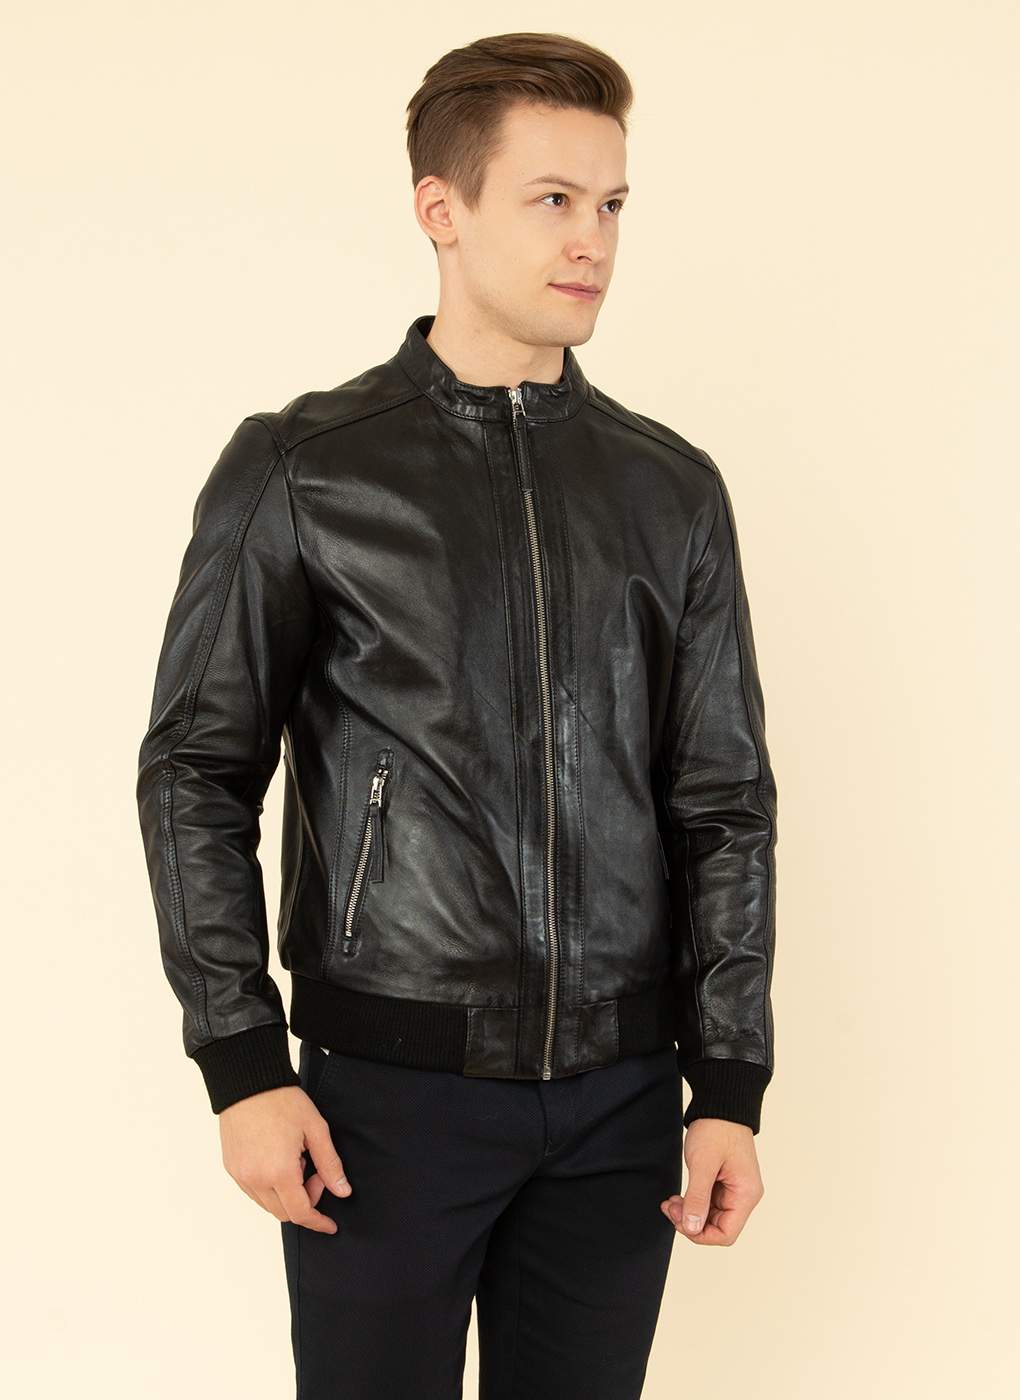 Кожаная куртка мужская Каляев 55185 черная 62 RU